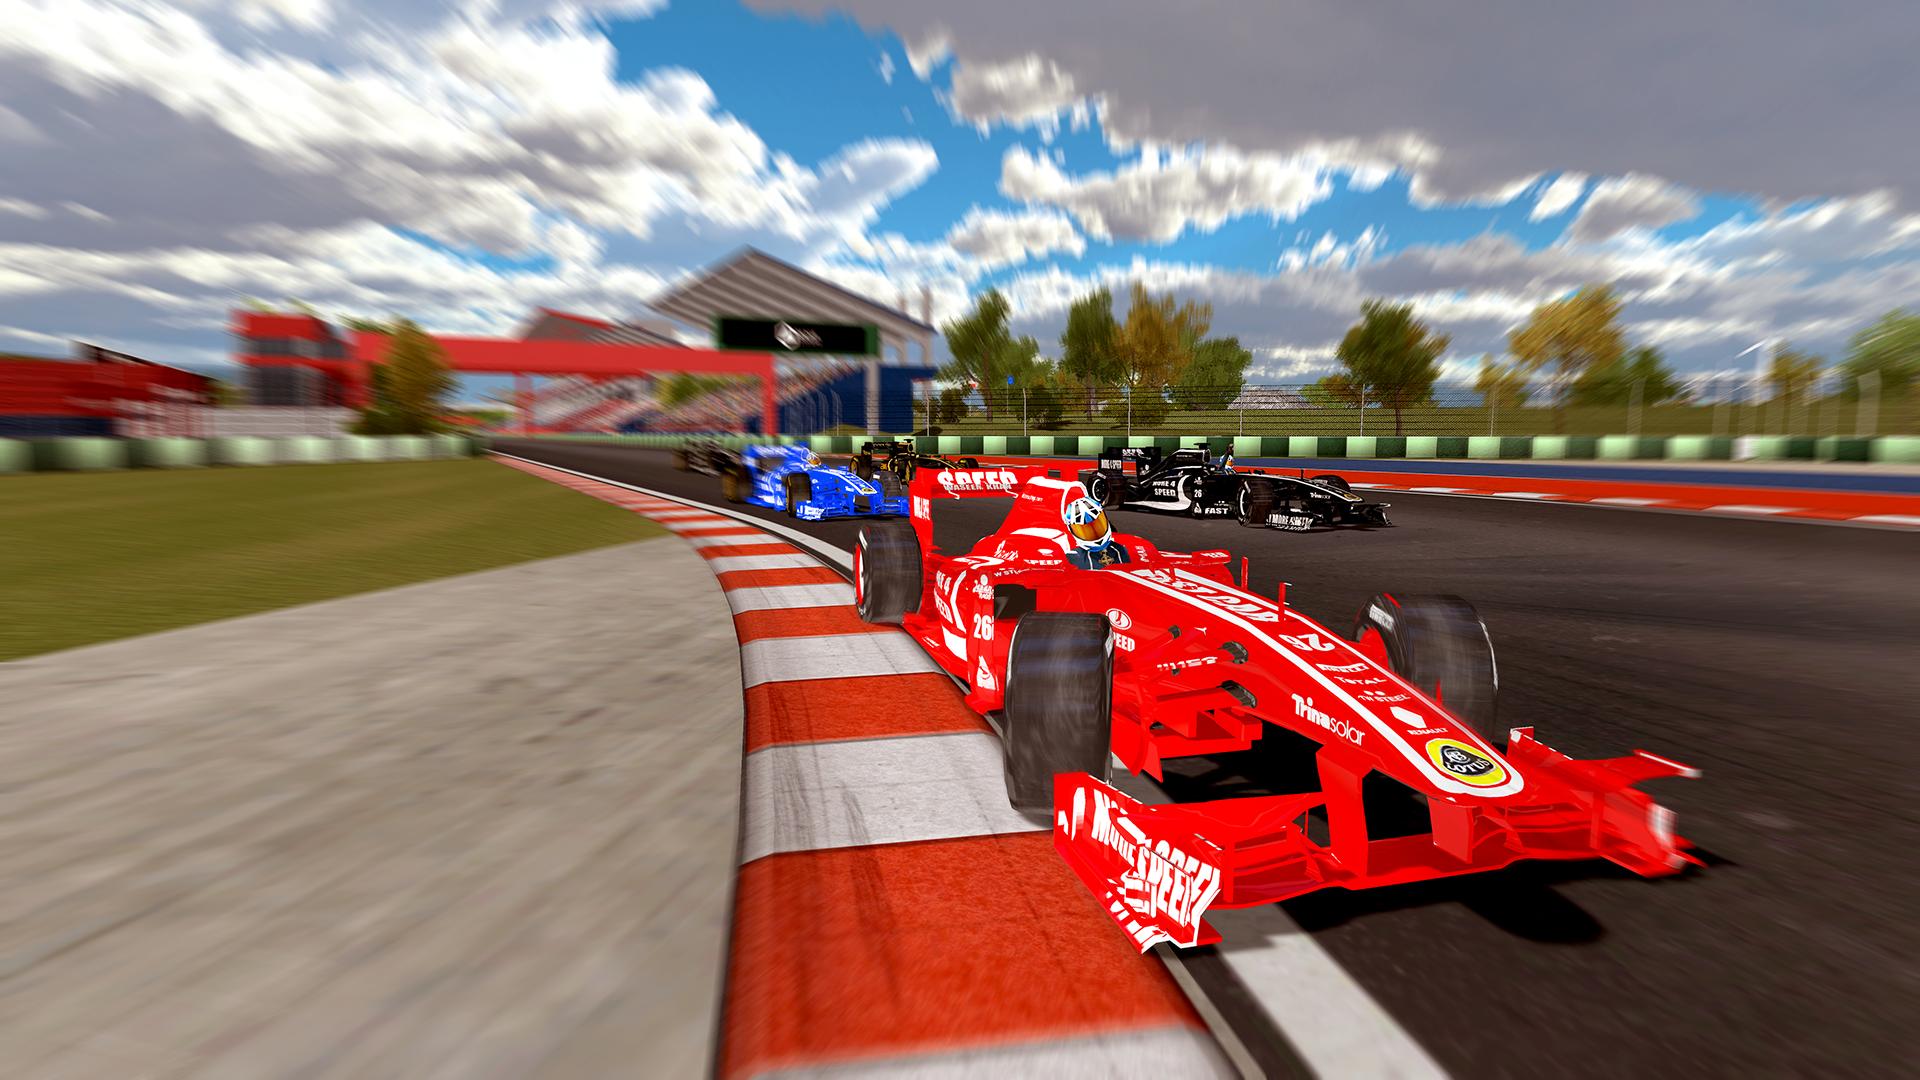 Car speed race. Реал рейсинг формула 1. Racing Speed f1. Track f1 BŞH. Формула 1 кар паркинг.